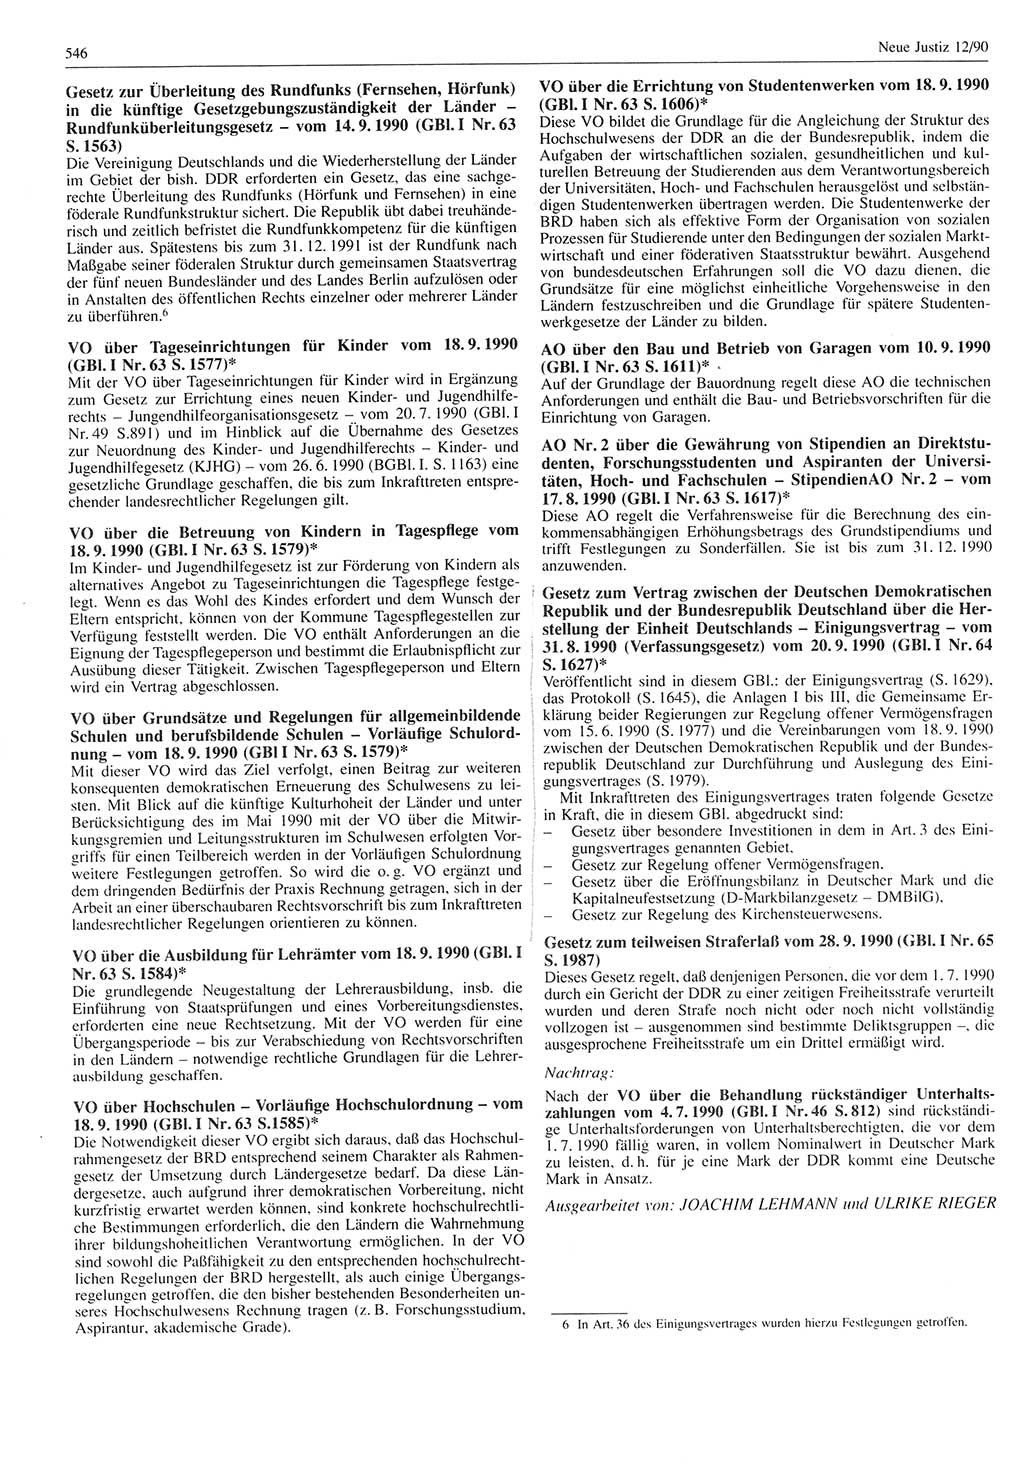 Neue Justiz (NJ), Zeitschrift für Rechtsetzung und Rechtsanwendung [Deutsche Demokratische Republik (DDR)], 44. Jahrgang 1990, Seite 546 (NJ DDR 1990, S. 546)